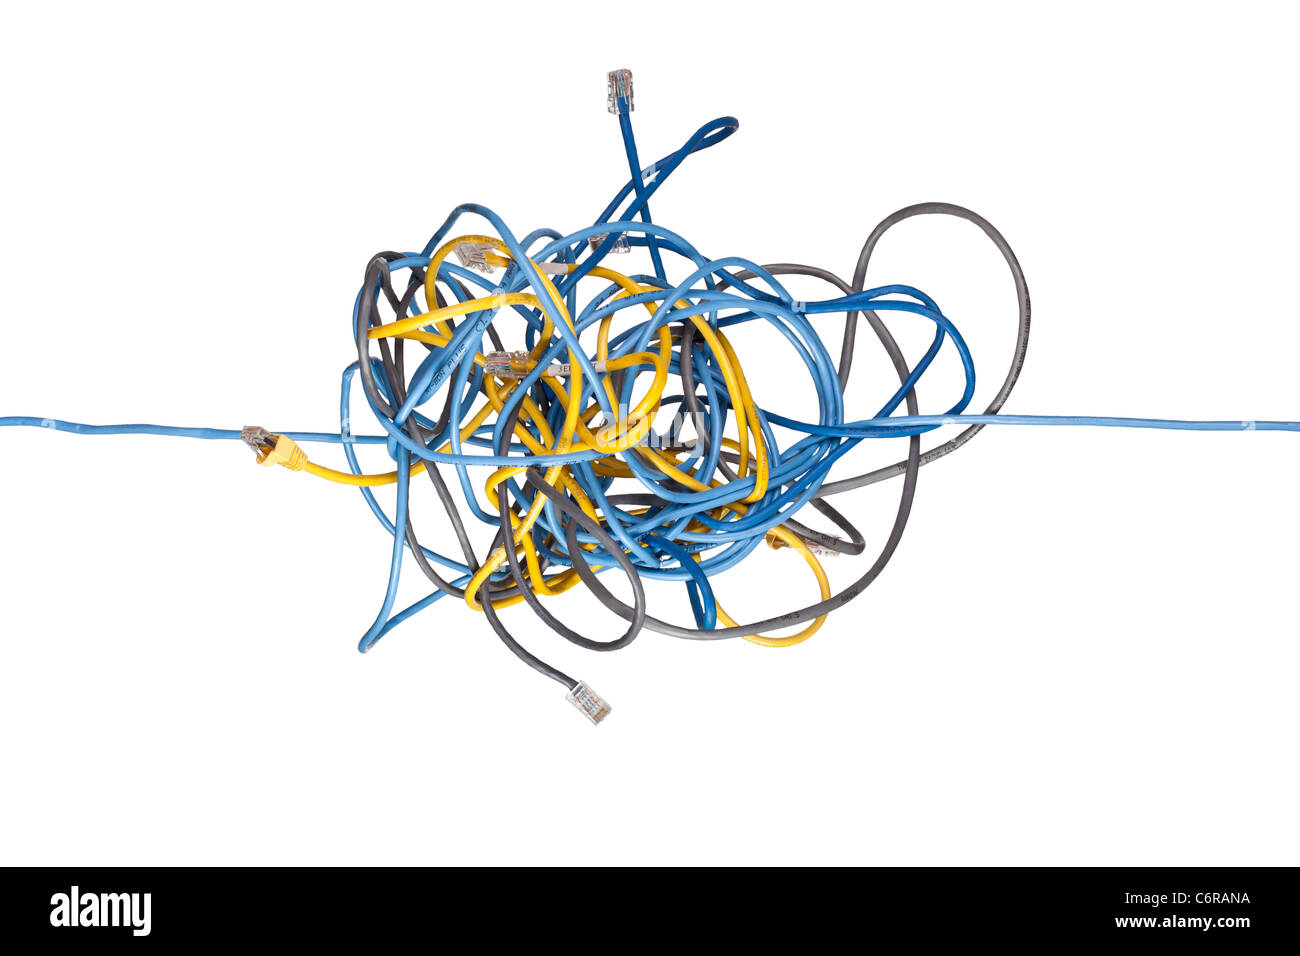 Netzwerk-Kabel durch ein wirres Bündel von Netzwerk-Kabel isoliert auf weißem Hintergrund Stockfoto